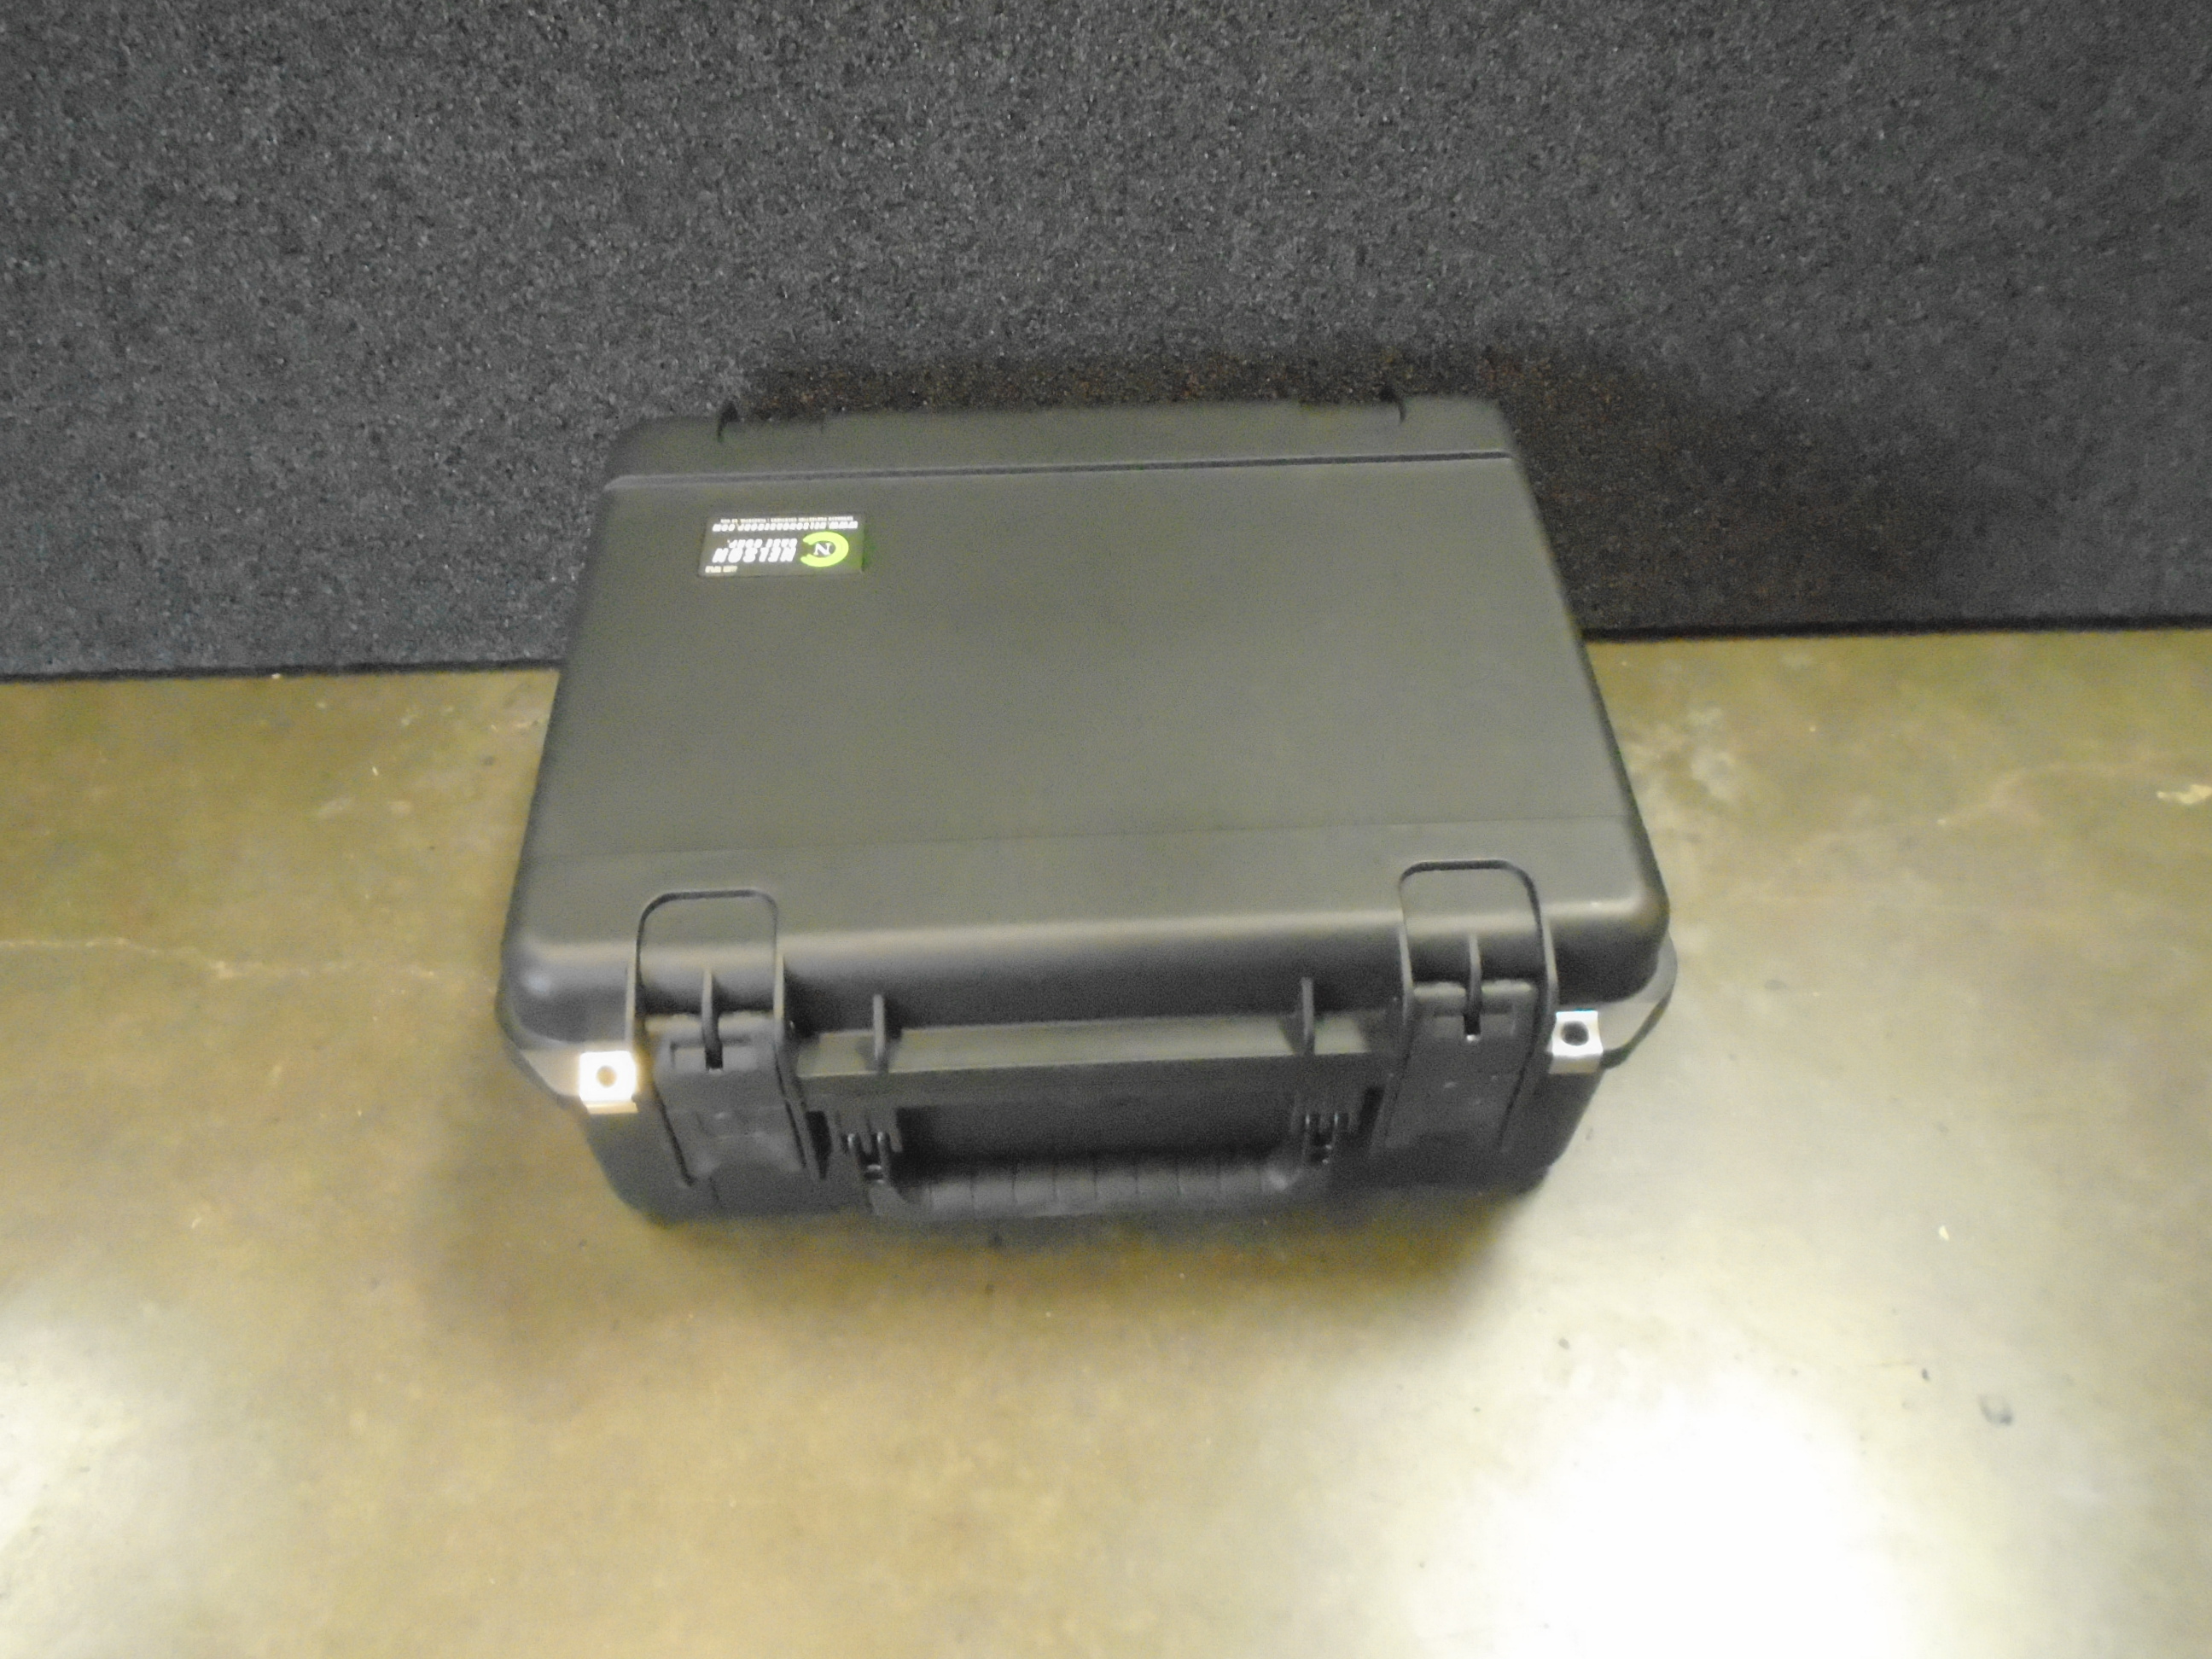 Print # 9300 - SKB 3i-1914N-8 Retrofitted for 24-Pack Shure ULXD1 Digital Wireless Bodypack Transmitter Kit By Nelson Case Corp